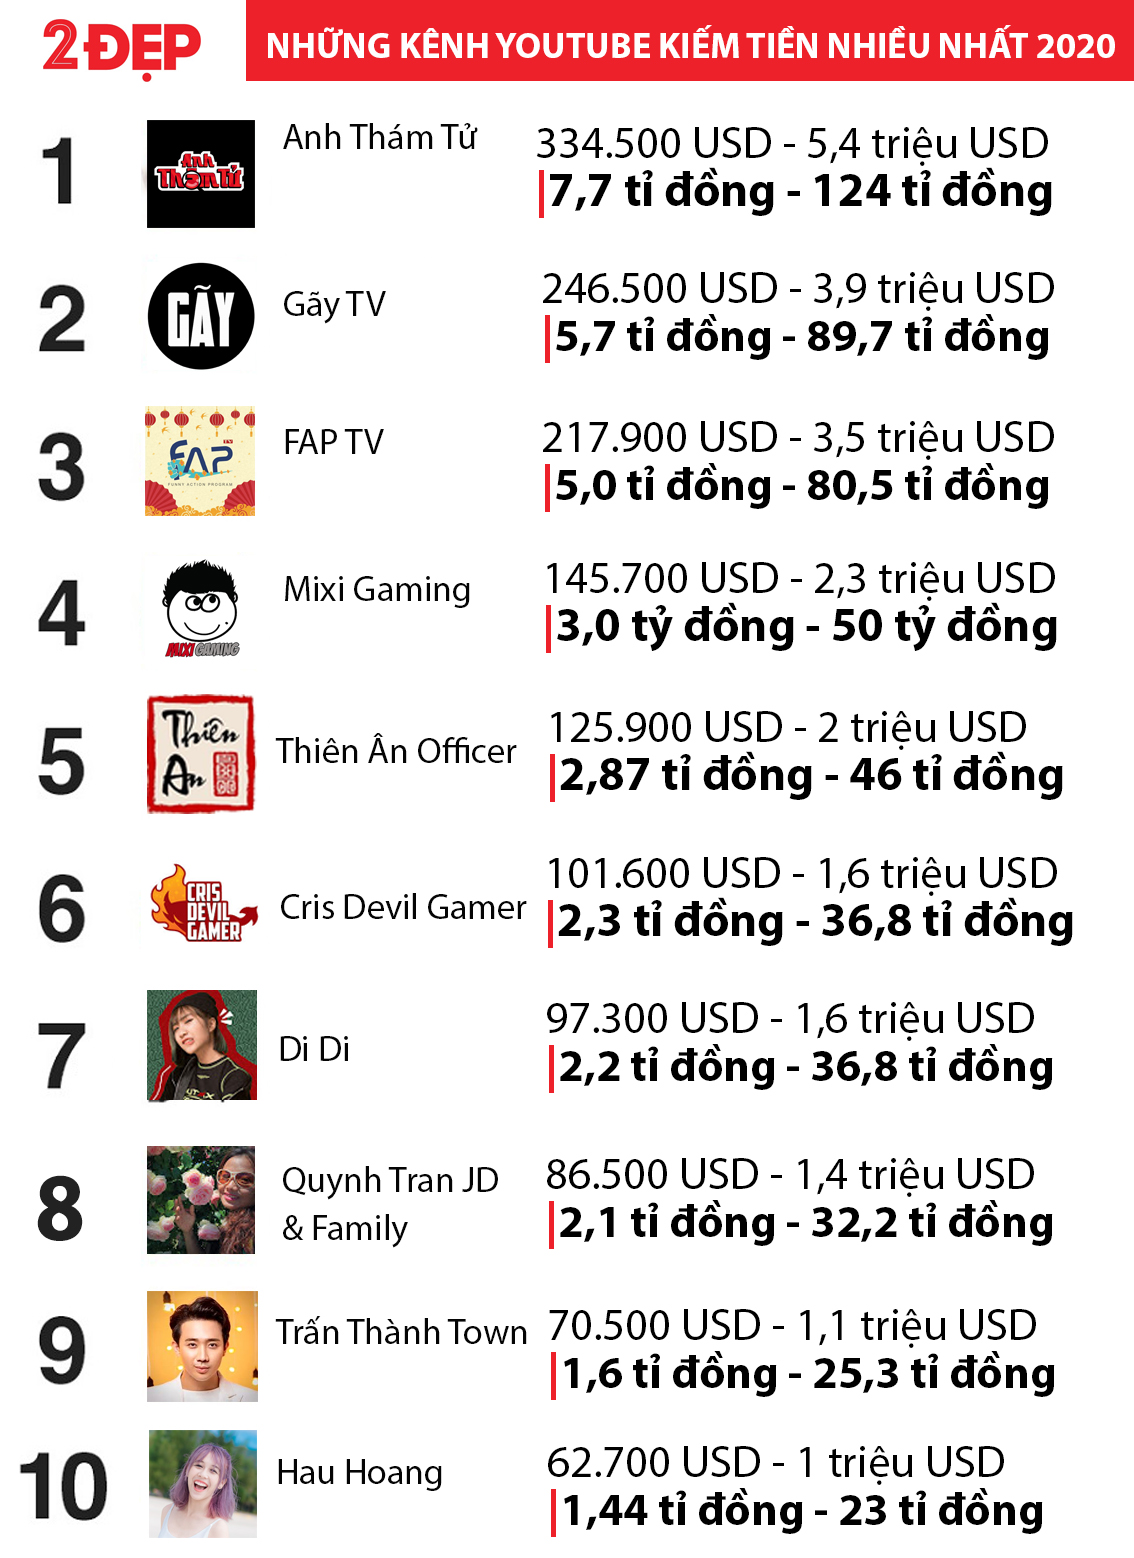 Bảng xếp hạng các kênh youtube có doanh thu cao nhất năm qua.